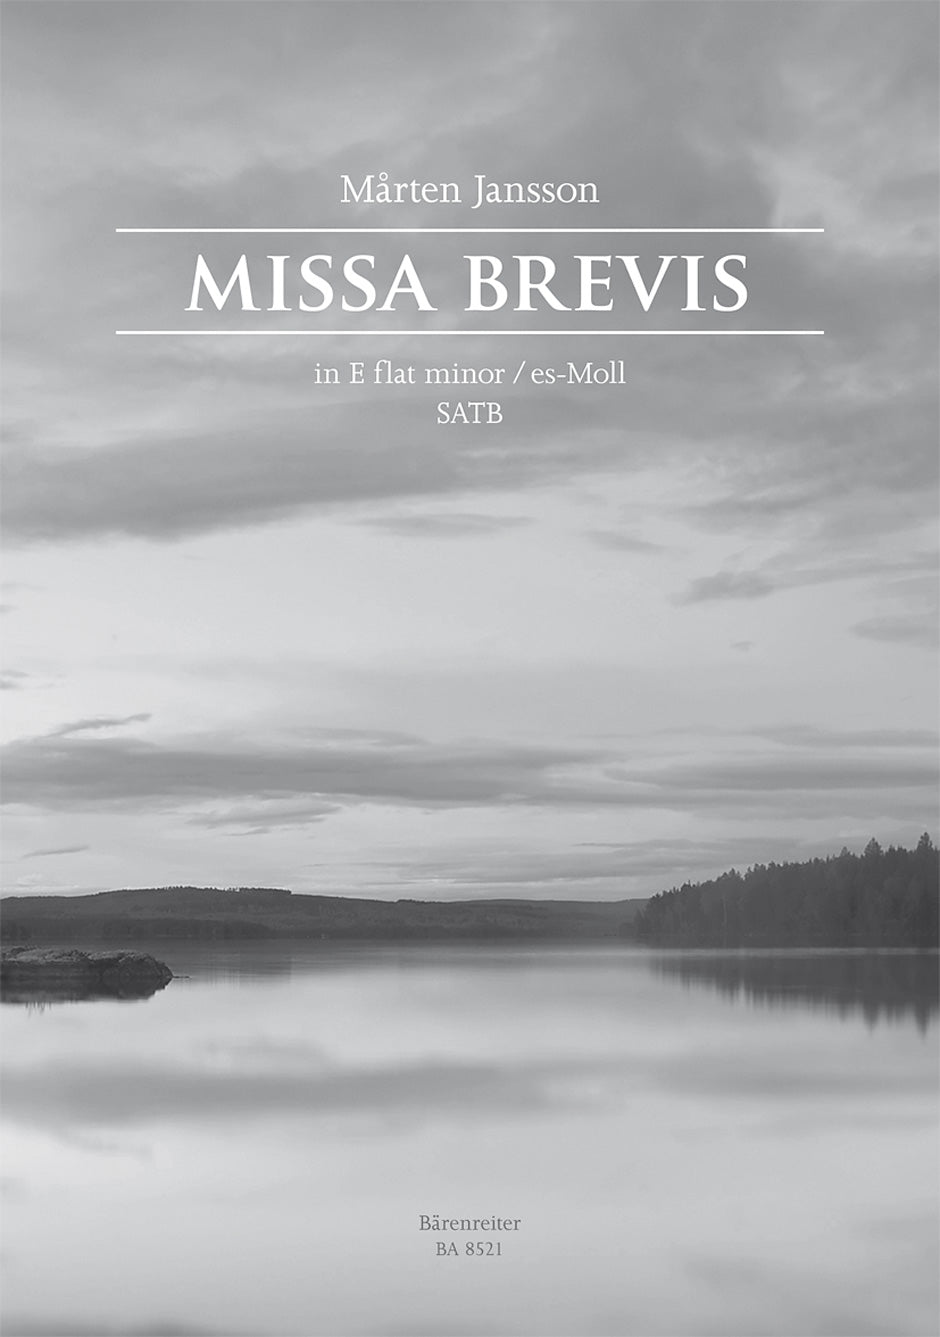 Jansson: Missa brevis